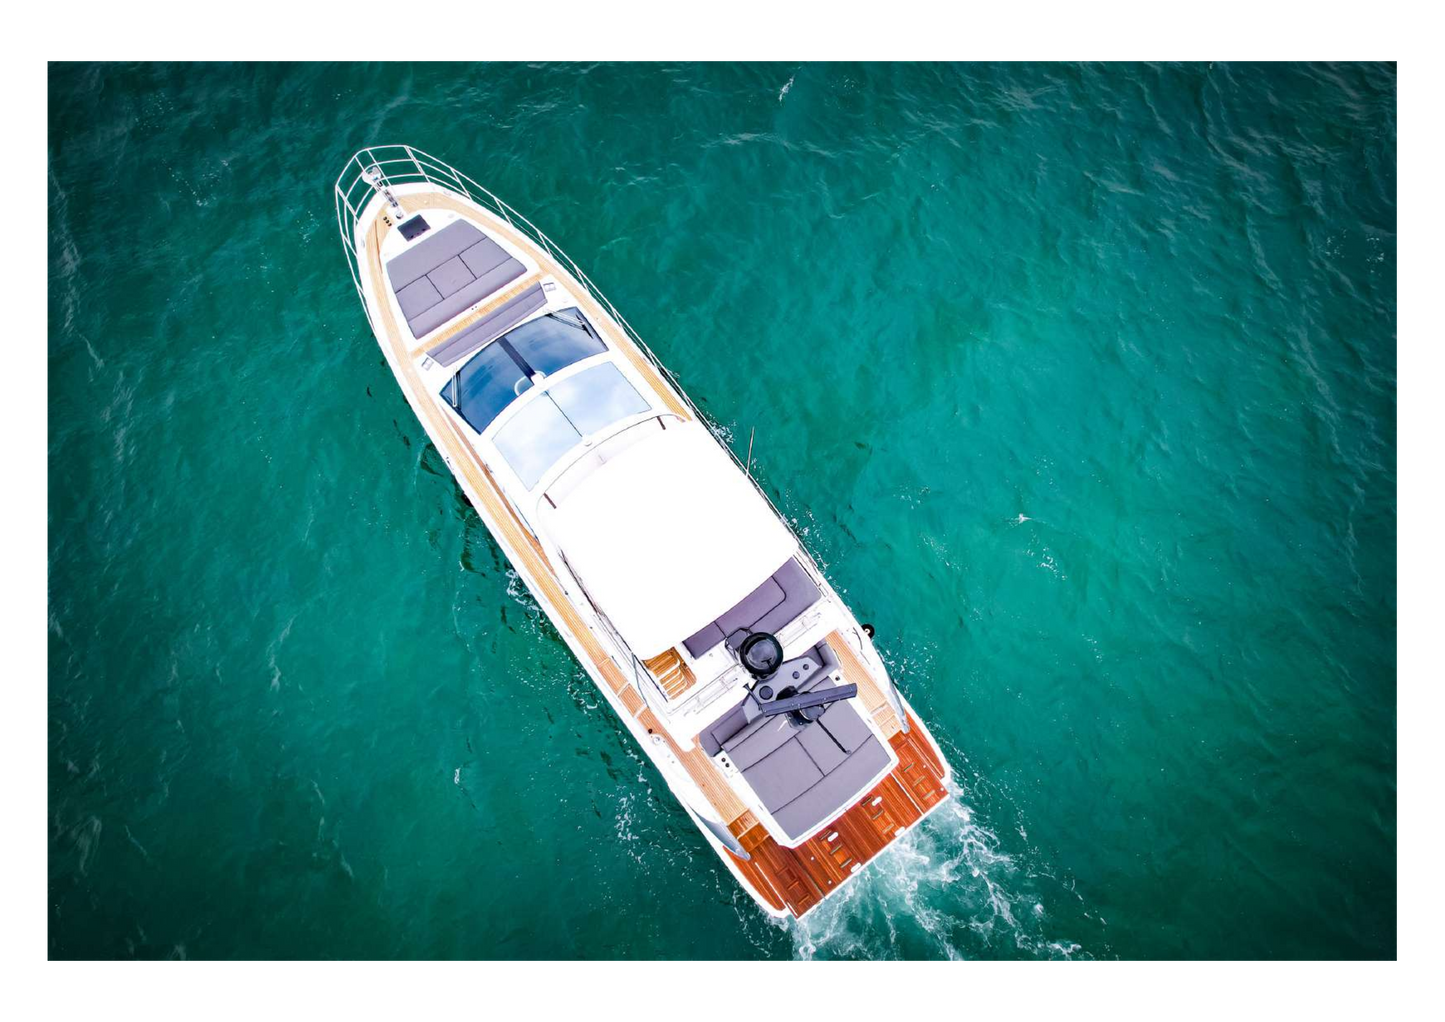 60' Azimut Sports - yacht